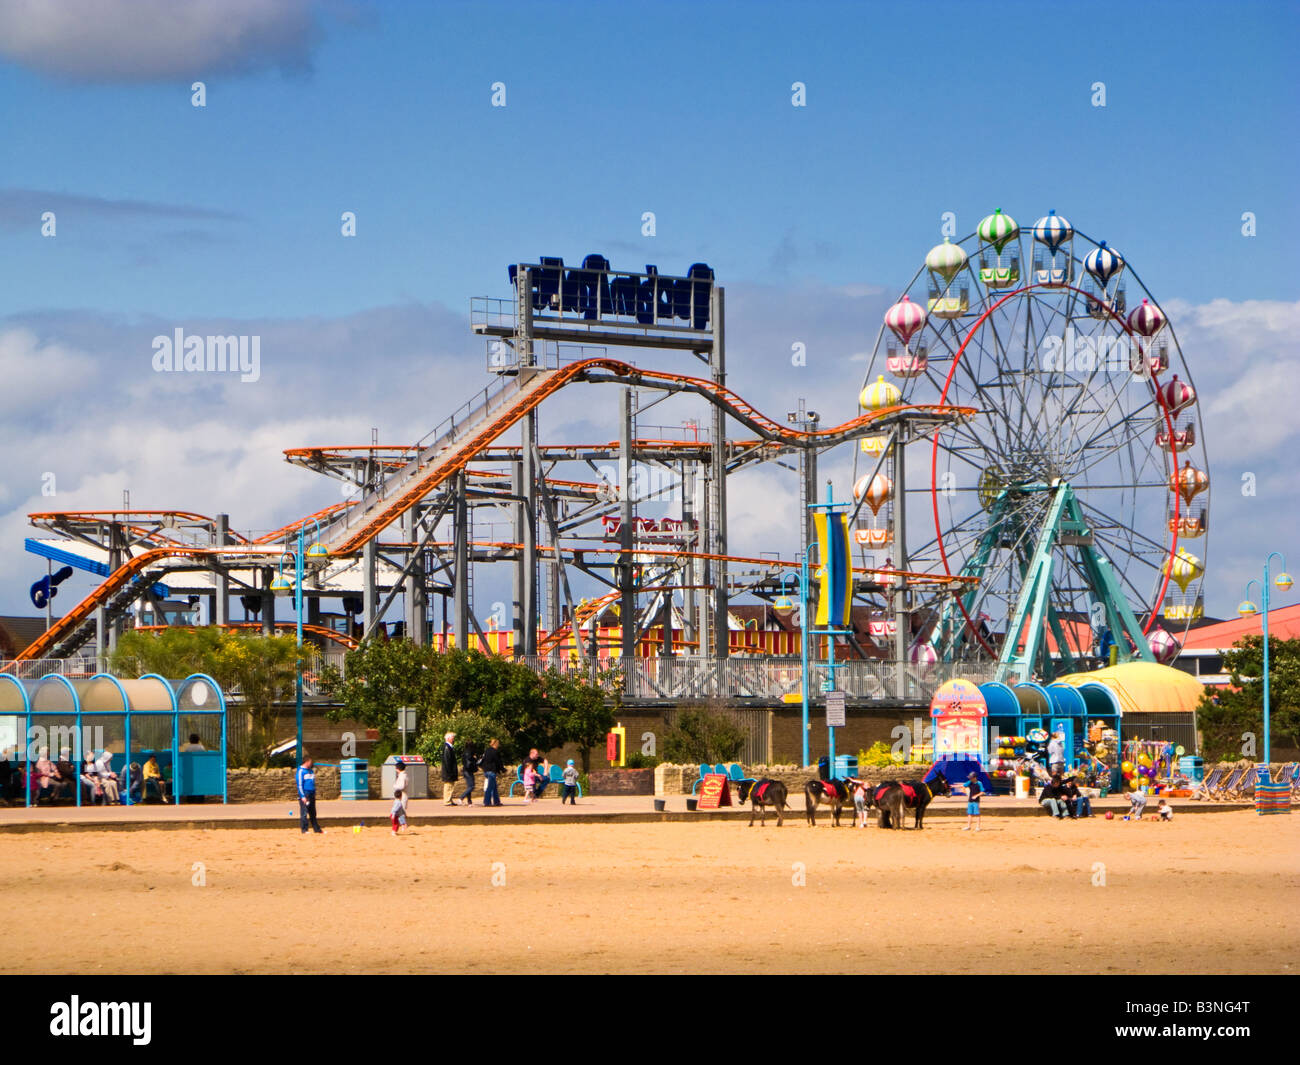 Parc d'attractions Pleasure Beach de Skegness amusement park sur la plage, Skegness, dans le Lincolnshire, Angleterre, RU Banque D'Images